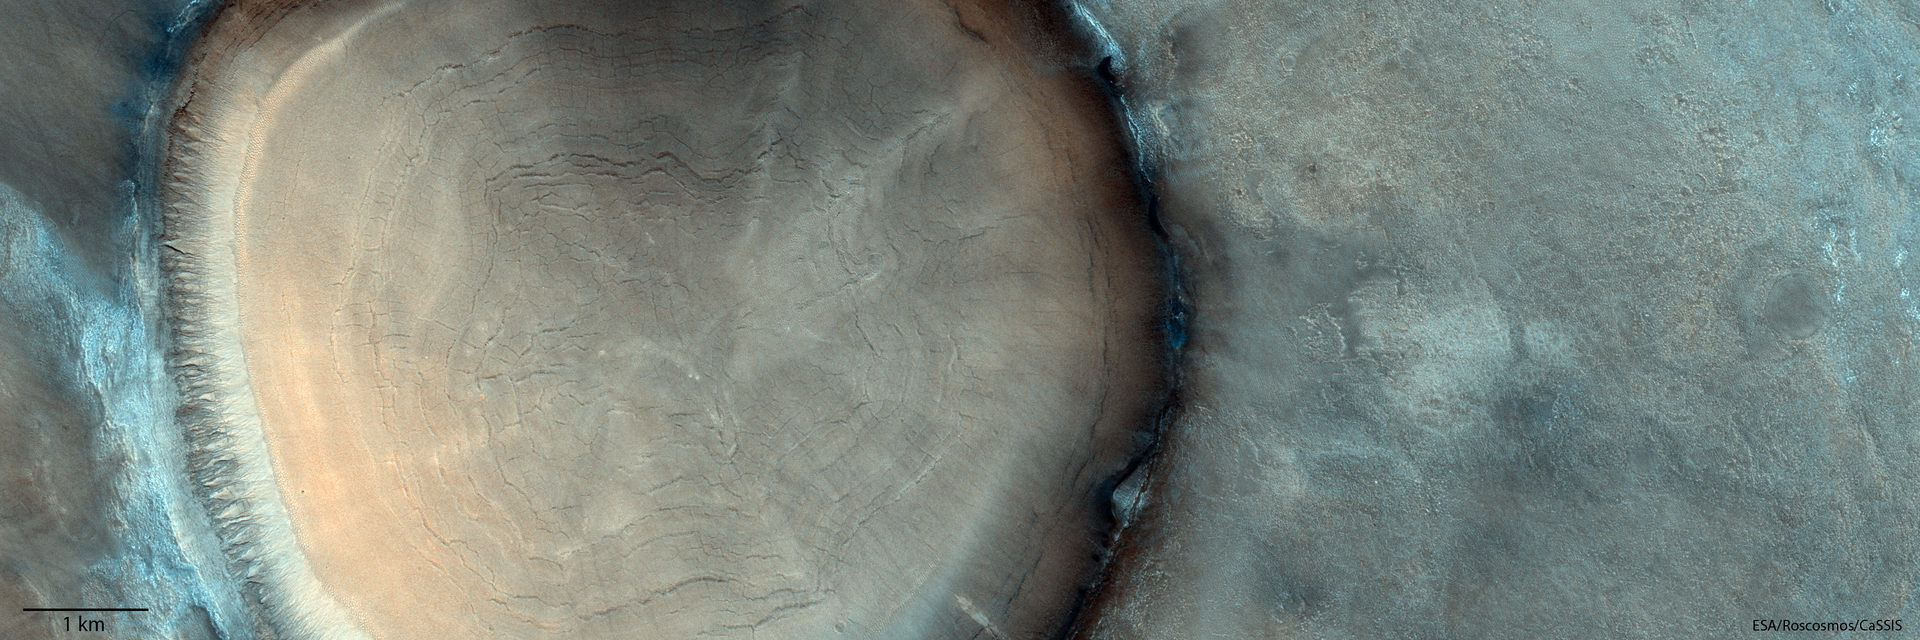 Cratera de Marte parecida com tronco de árvore, foto divulgada em 28 de janeiro de 2022 - Sputnik Brasil, 1920, 31.01.2022